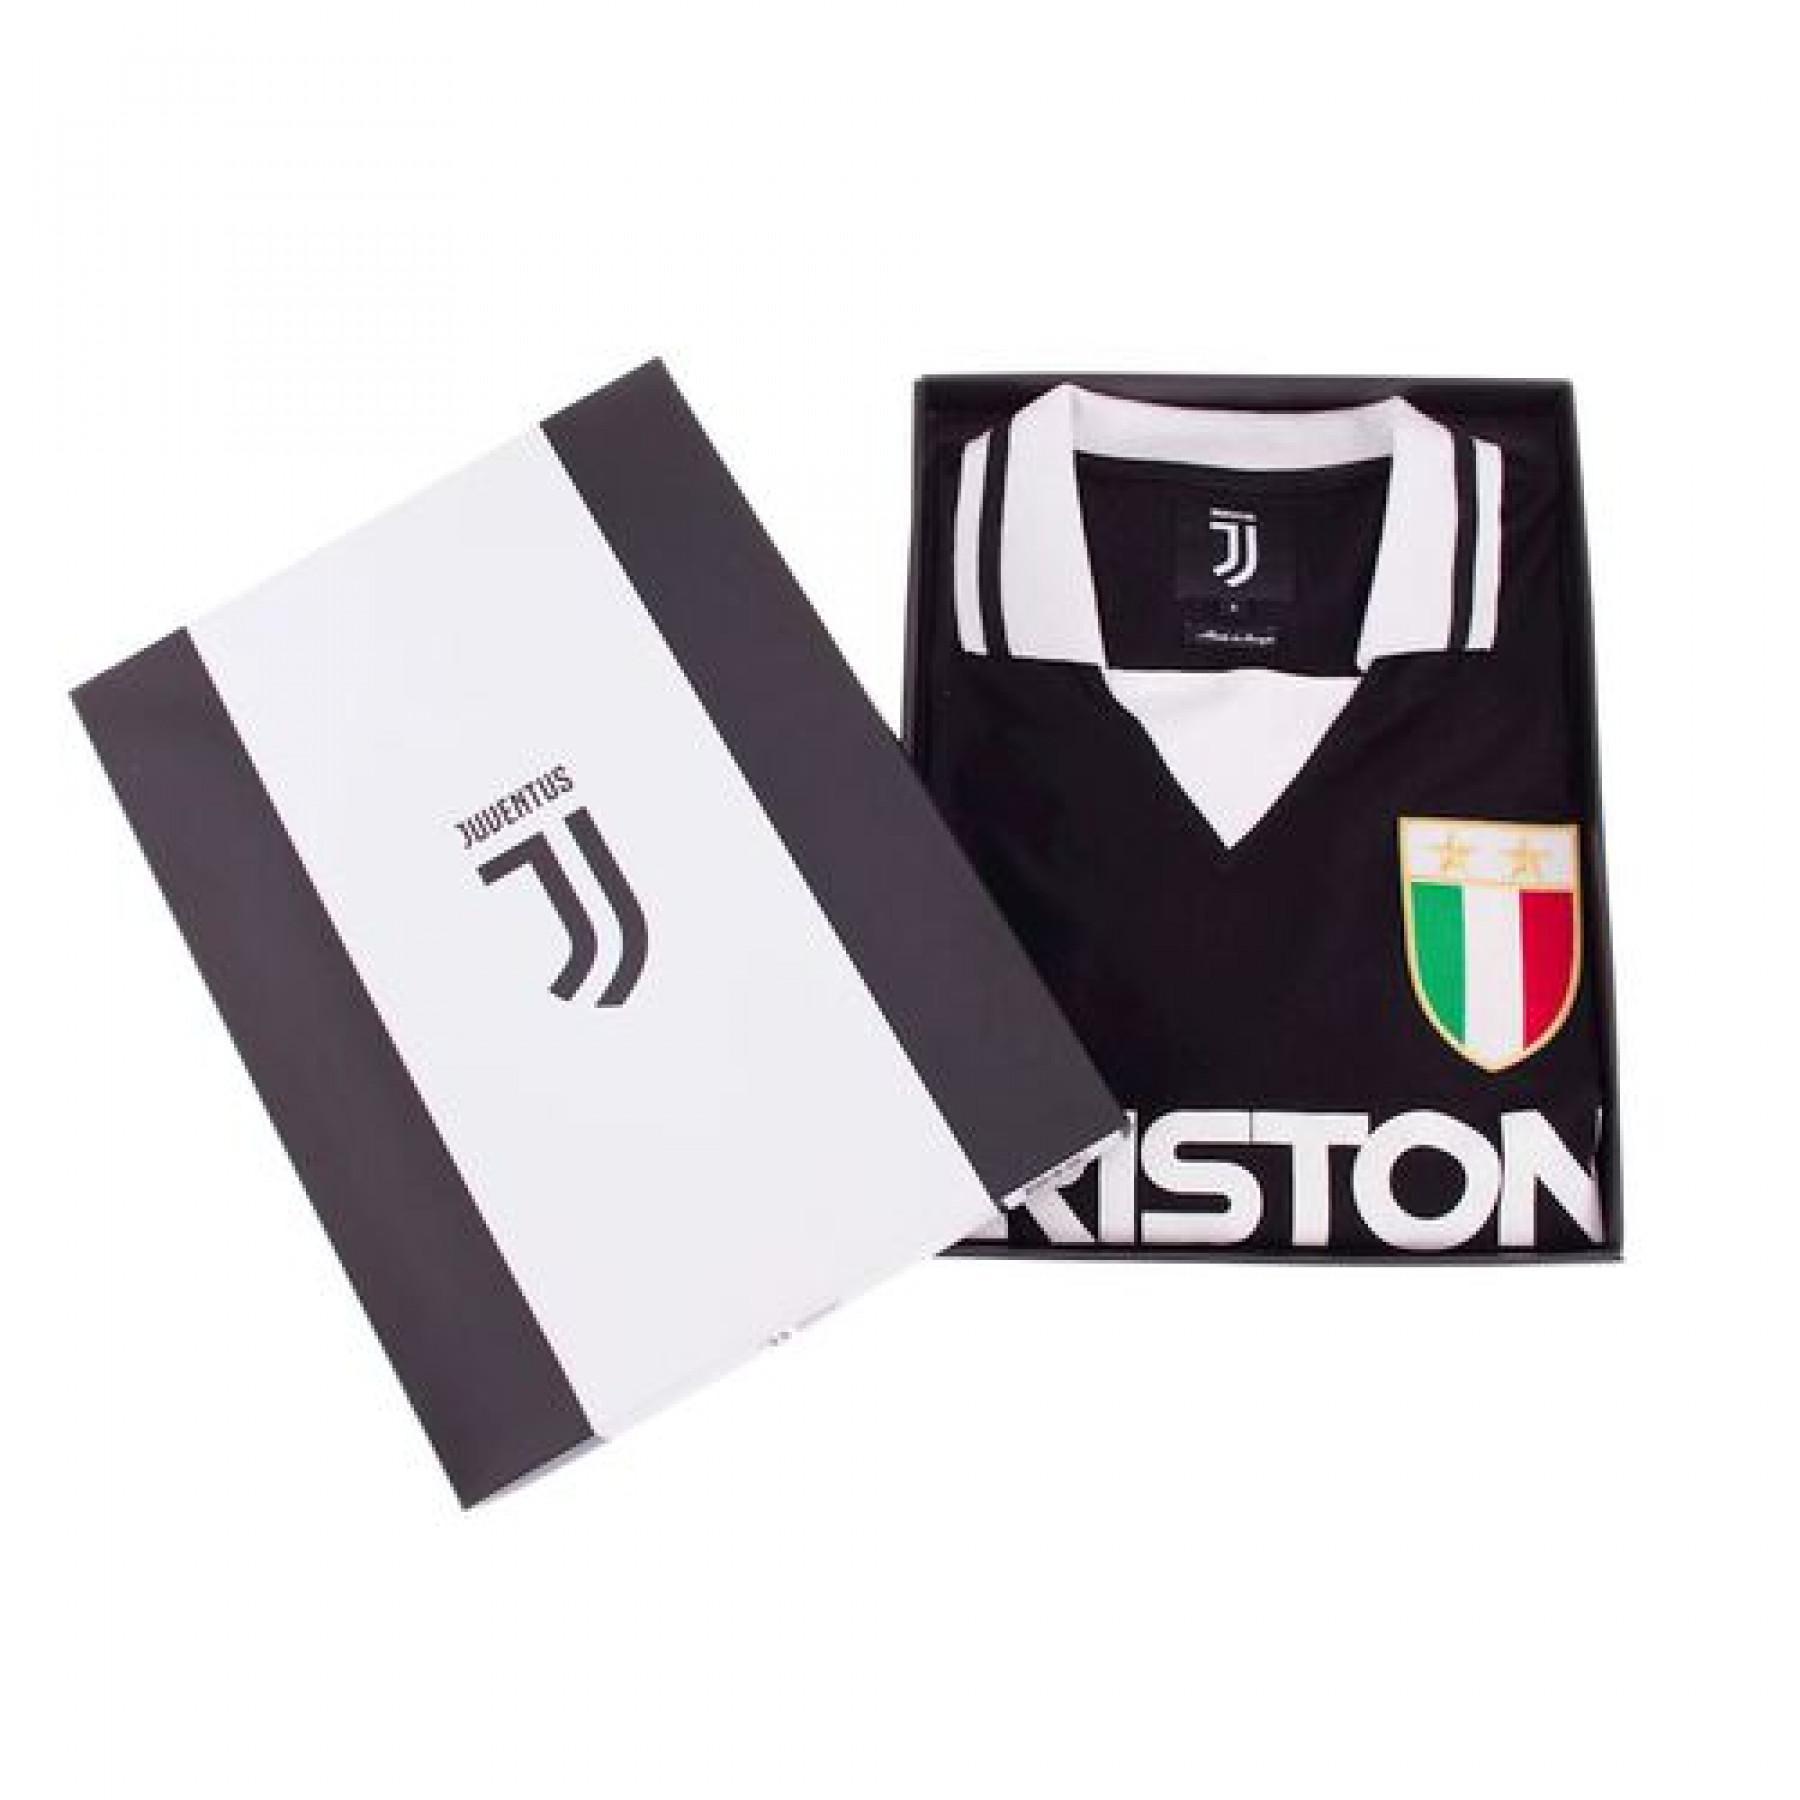 Auswärtstrikot Copa Football Juventus Turin 1986 - 87 Retro